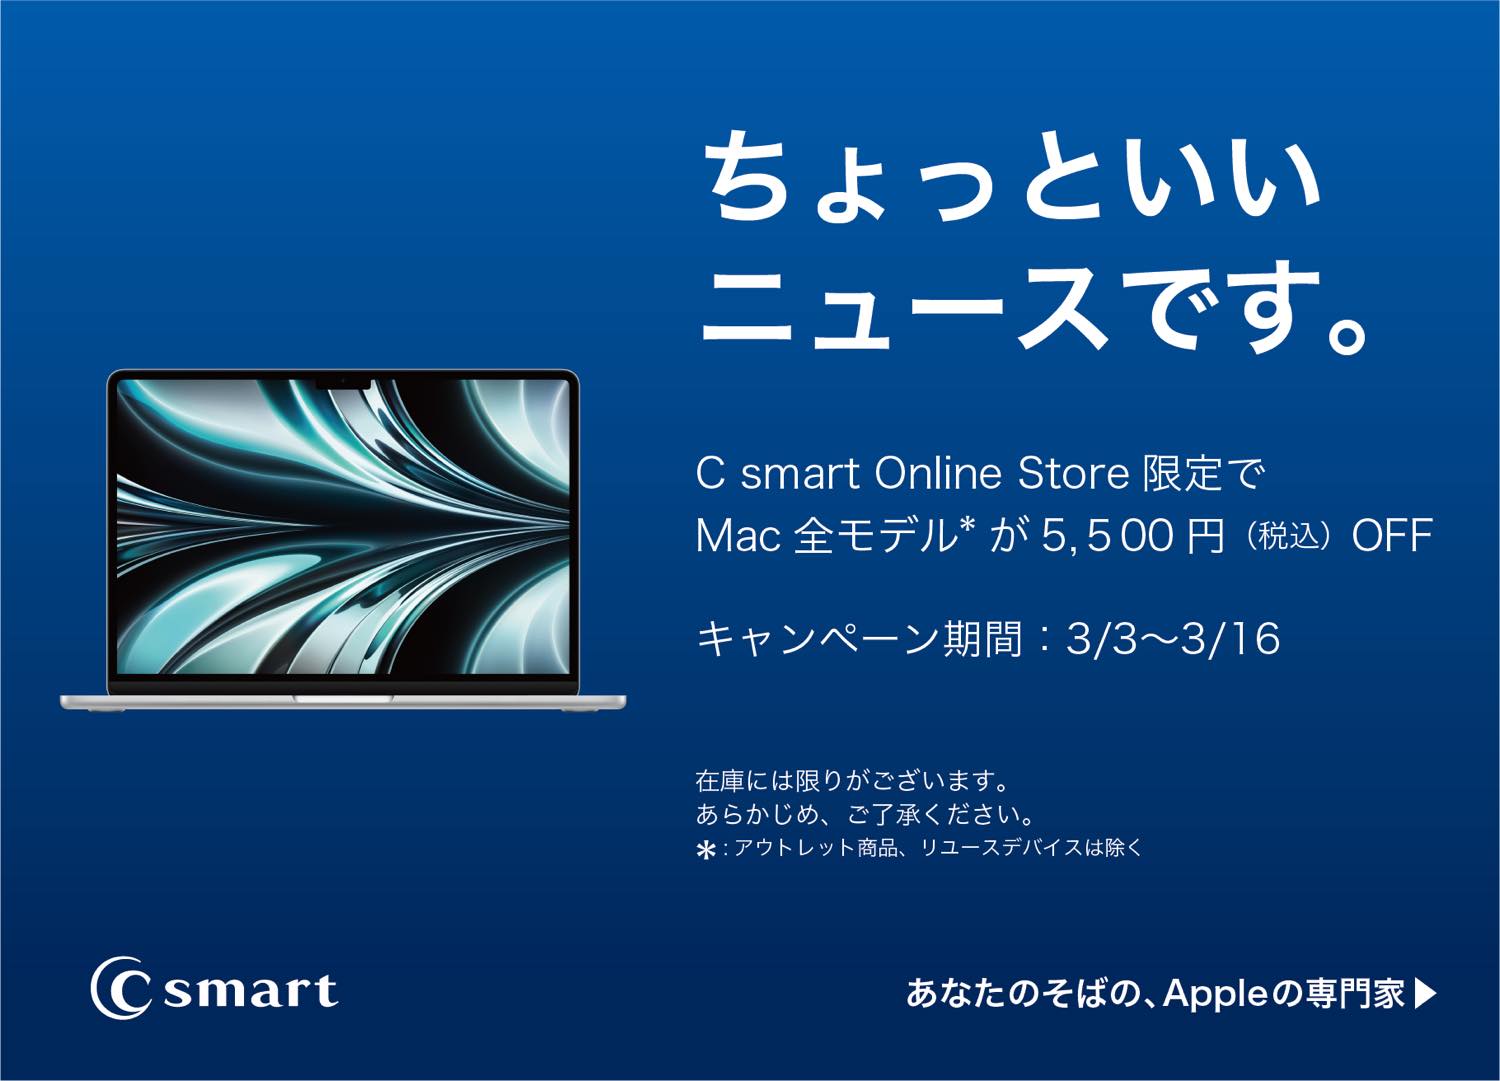 C smart、オンラインストアでMacの全モデルを5,500円オフで販売するセールを開催中（3月16日まで）